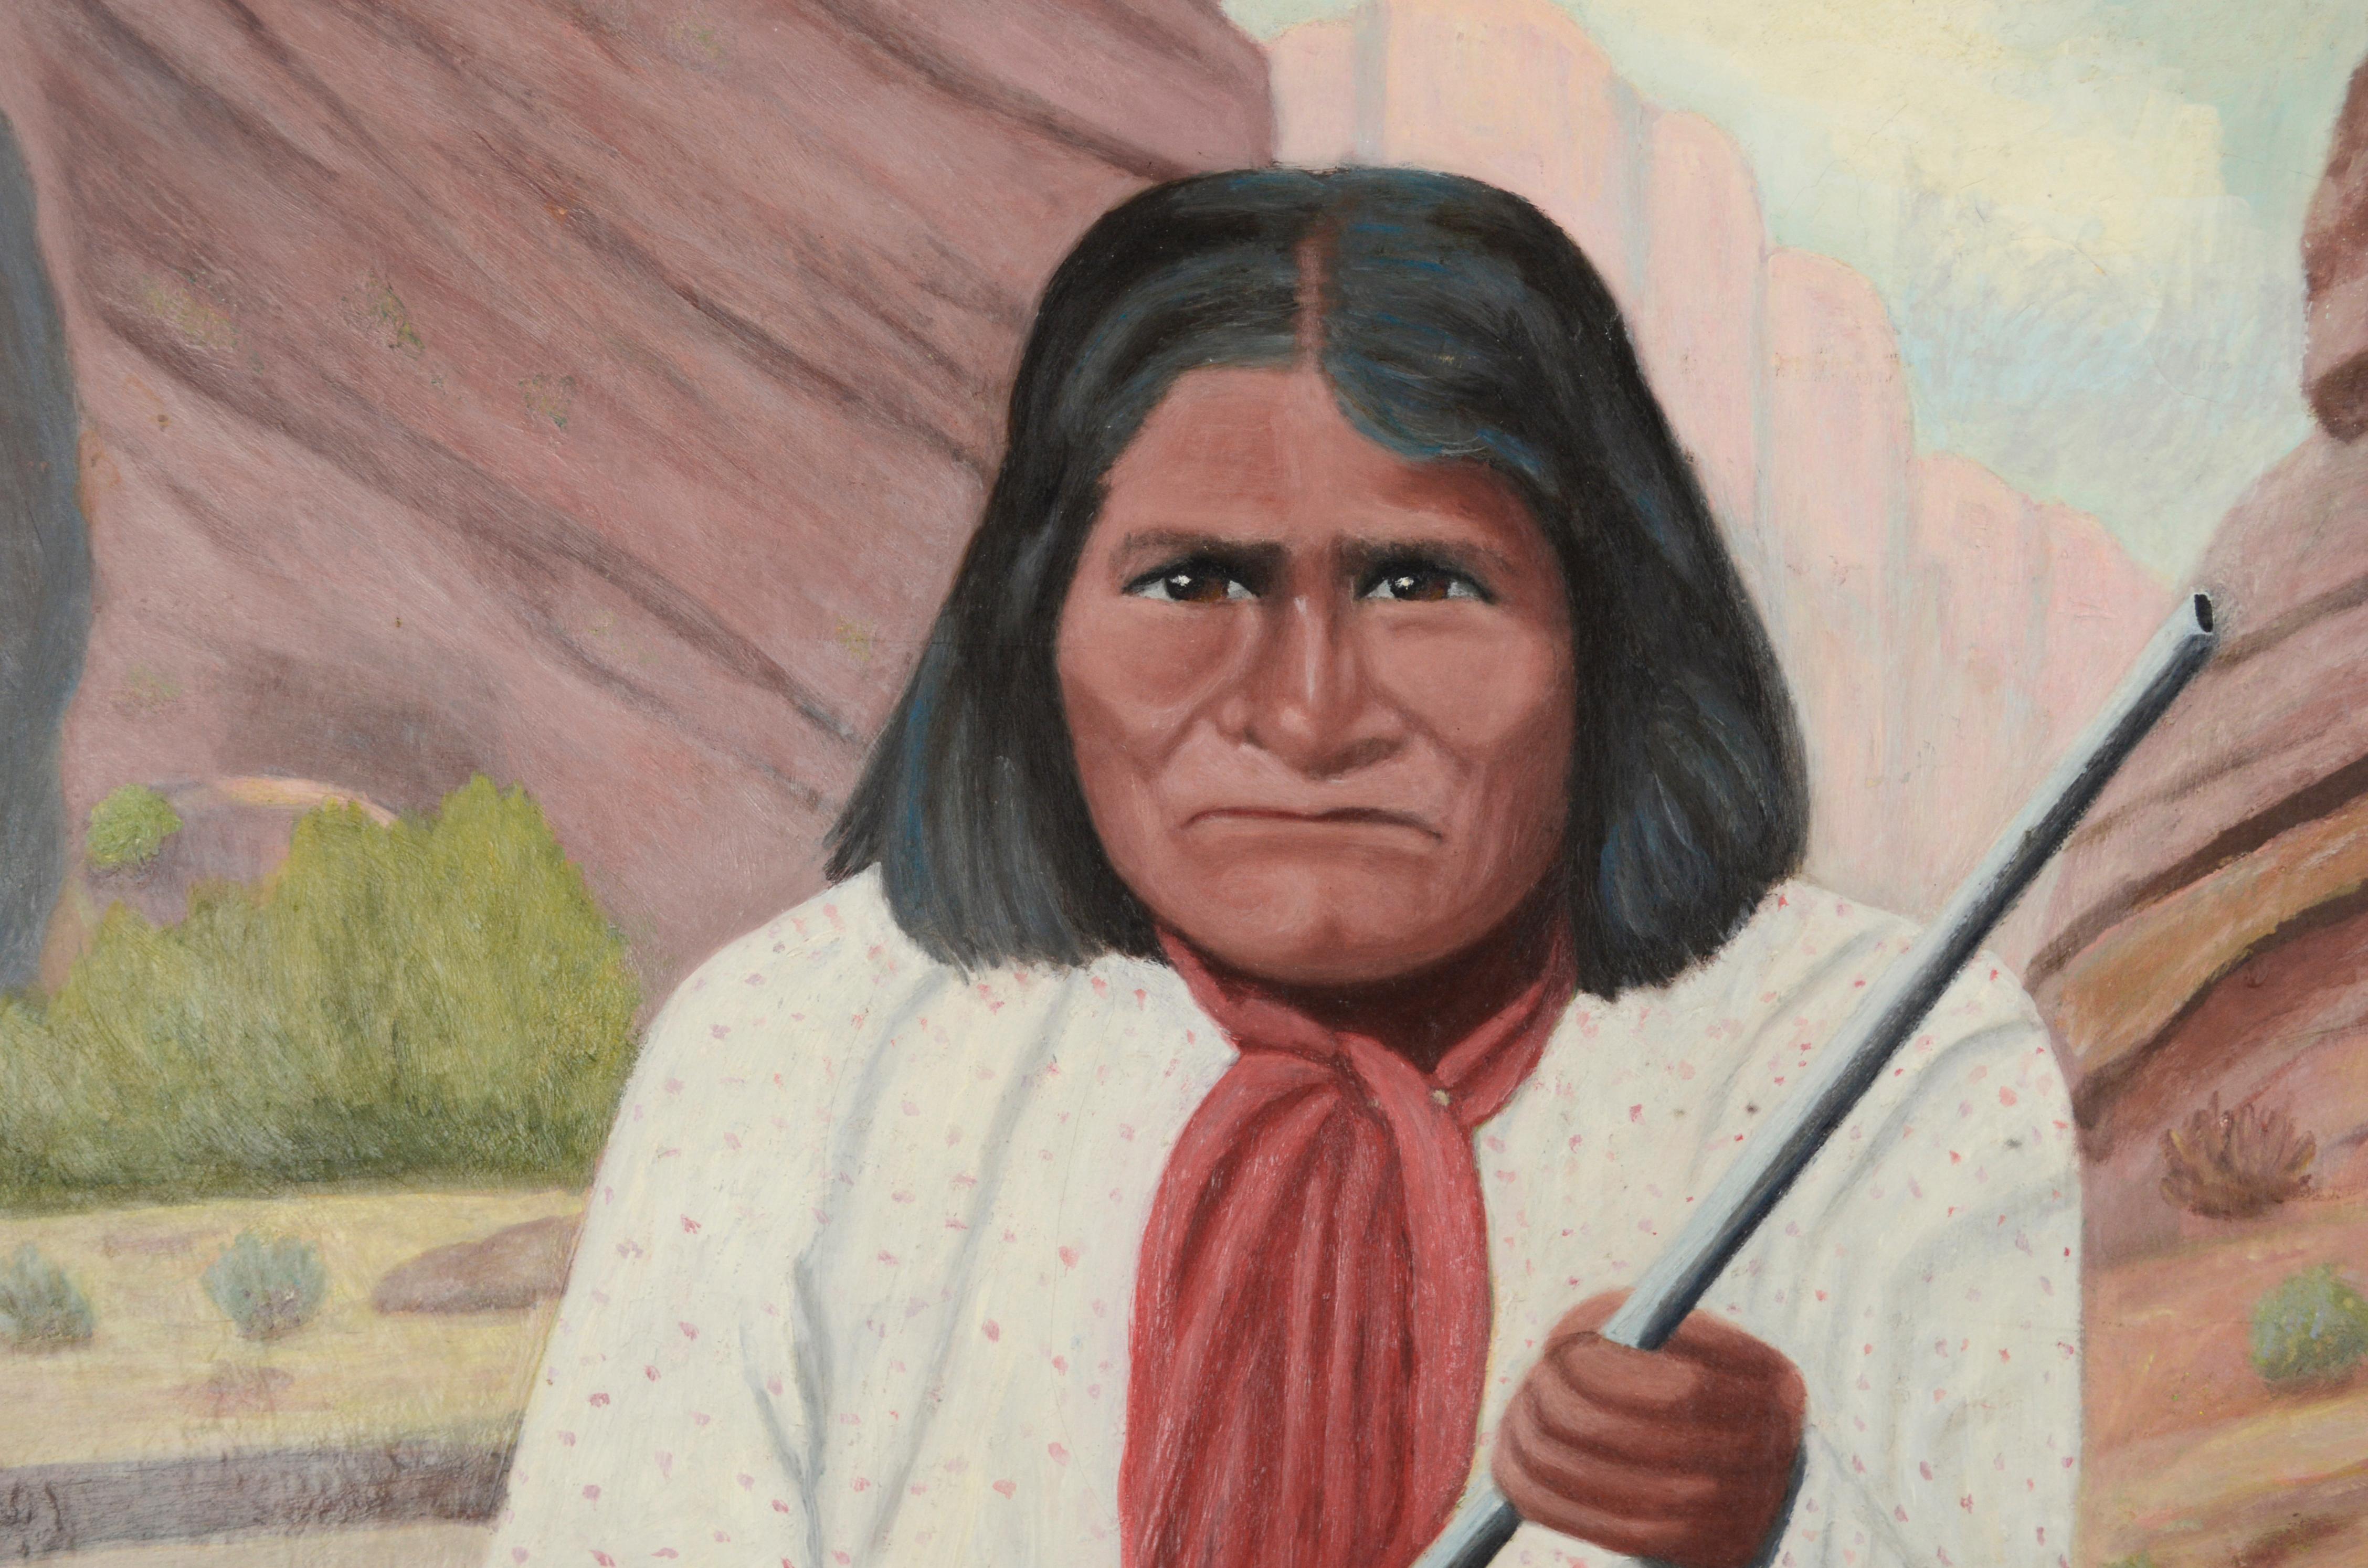 Indianer Geronimo 1870er Jahre Porträt gemalt ca. 1950er Jahre Öl auf Leinwand
Ausgezeichnetes und ausdrucksstarkes Porträt des Apachenhäuptlings Geronimo, wie er in den 1870er Jahren aussah, von D. Morgan, unbekannt (Amerikaner, 20.